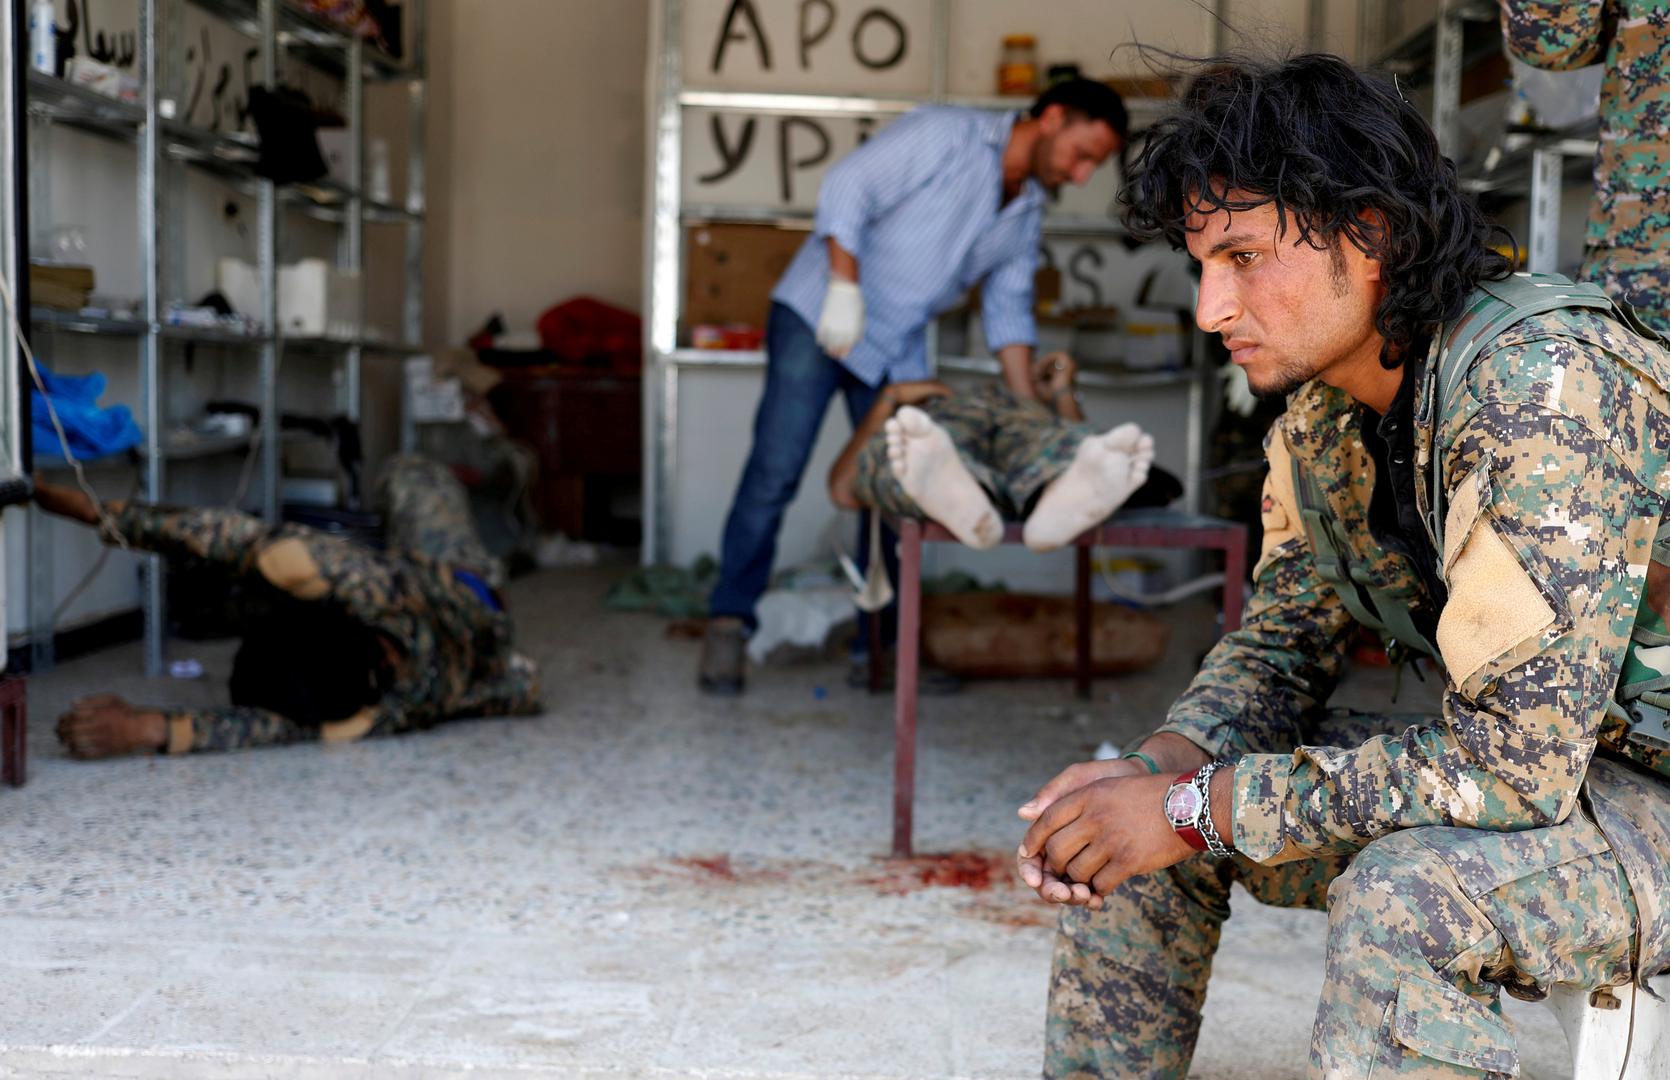  Borac Sirijskih demokratskih snaga sjedi dok medicinsko osoblje brine o suborcu kojeg su ranili iz snajpera pripadnici Islamske države u Rakki.